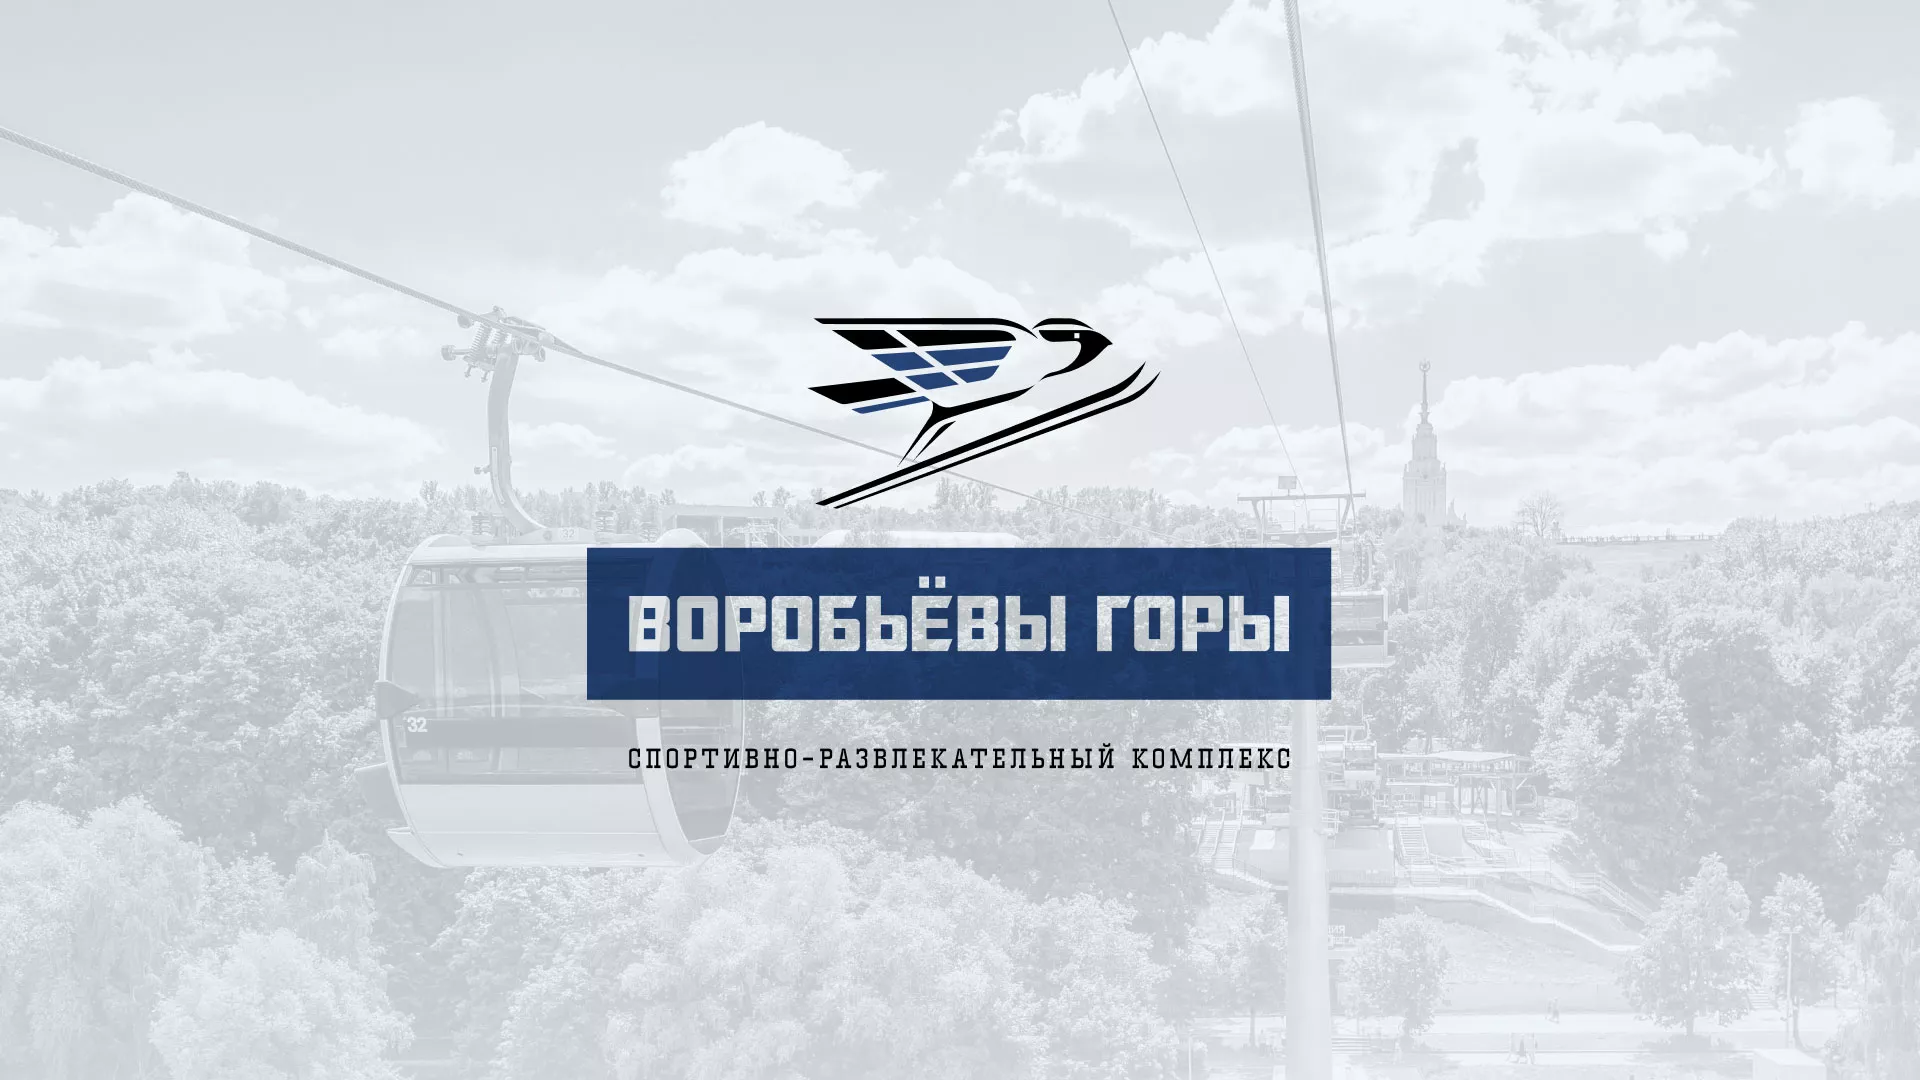 Разработка сайта в Мантурово для спортивно-развлекательного комплекса «Воробьёвы горы»